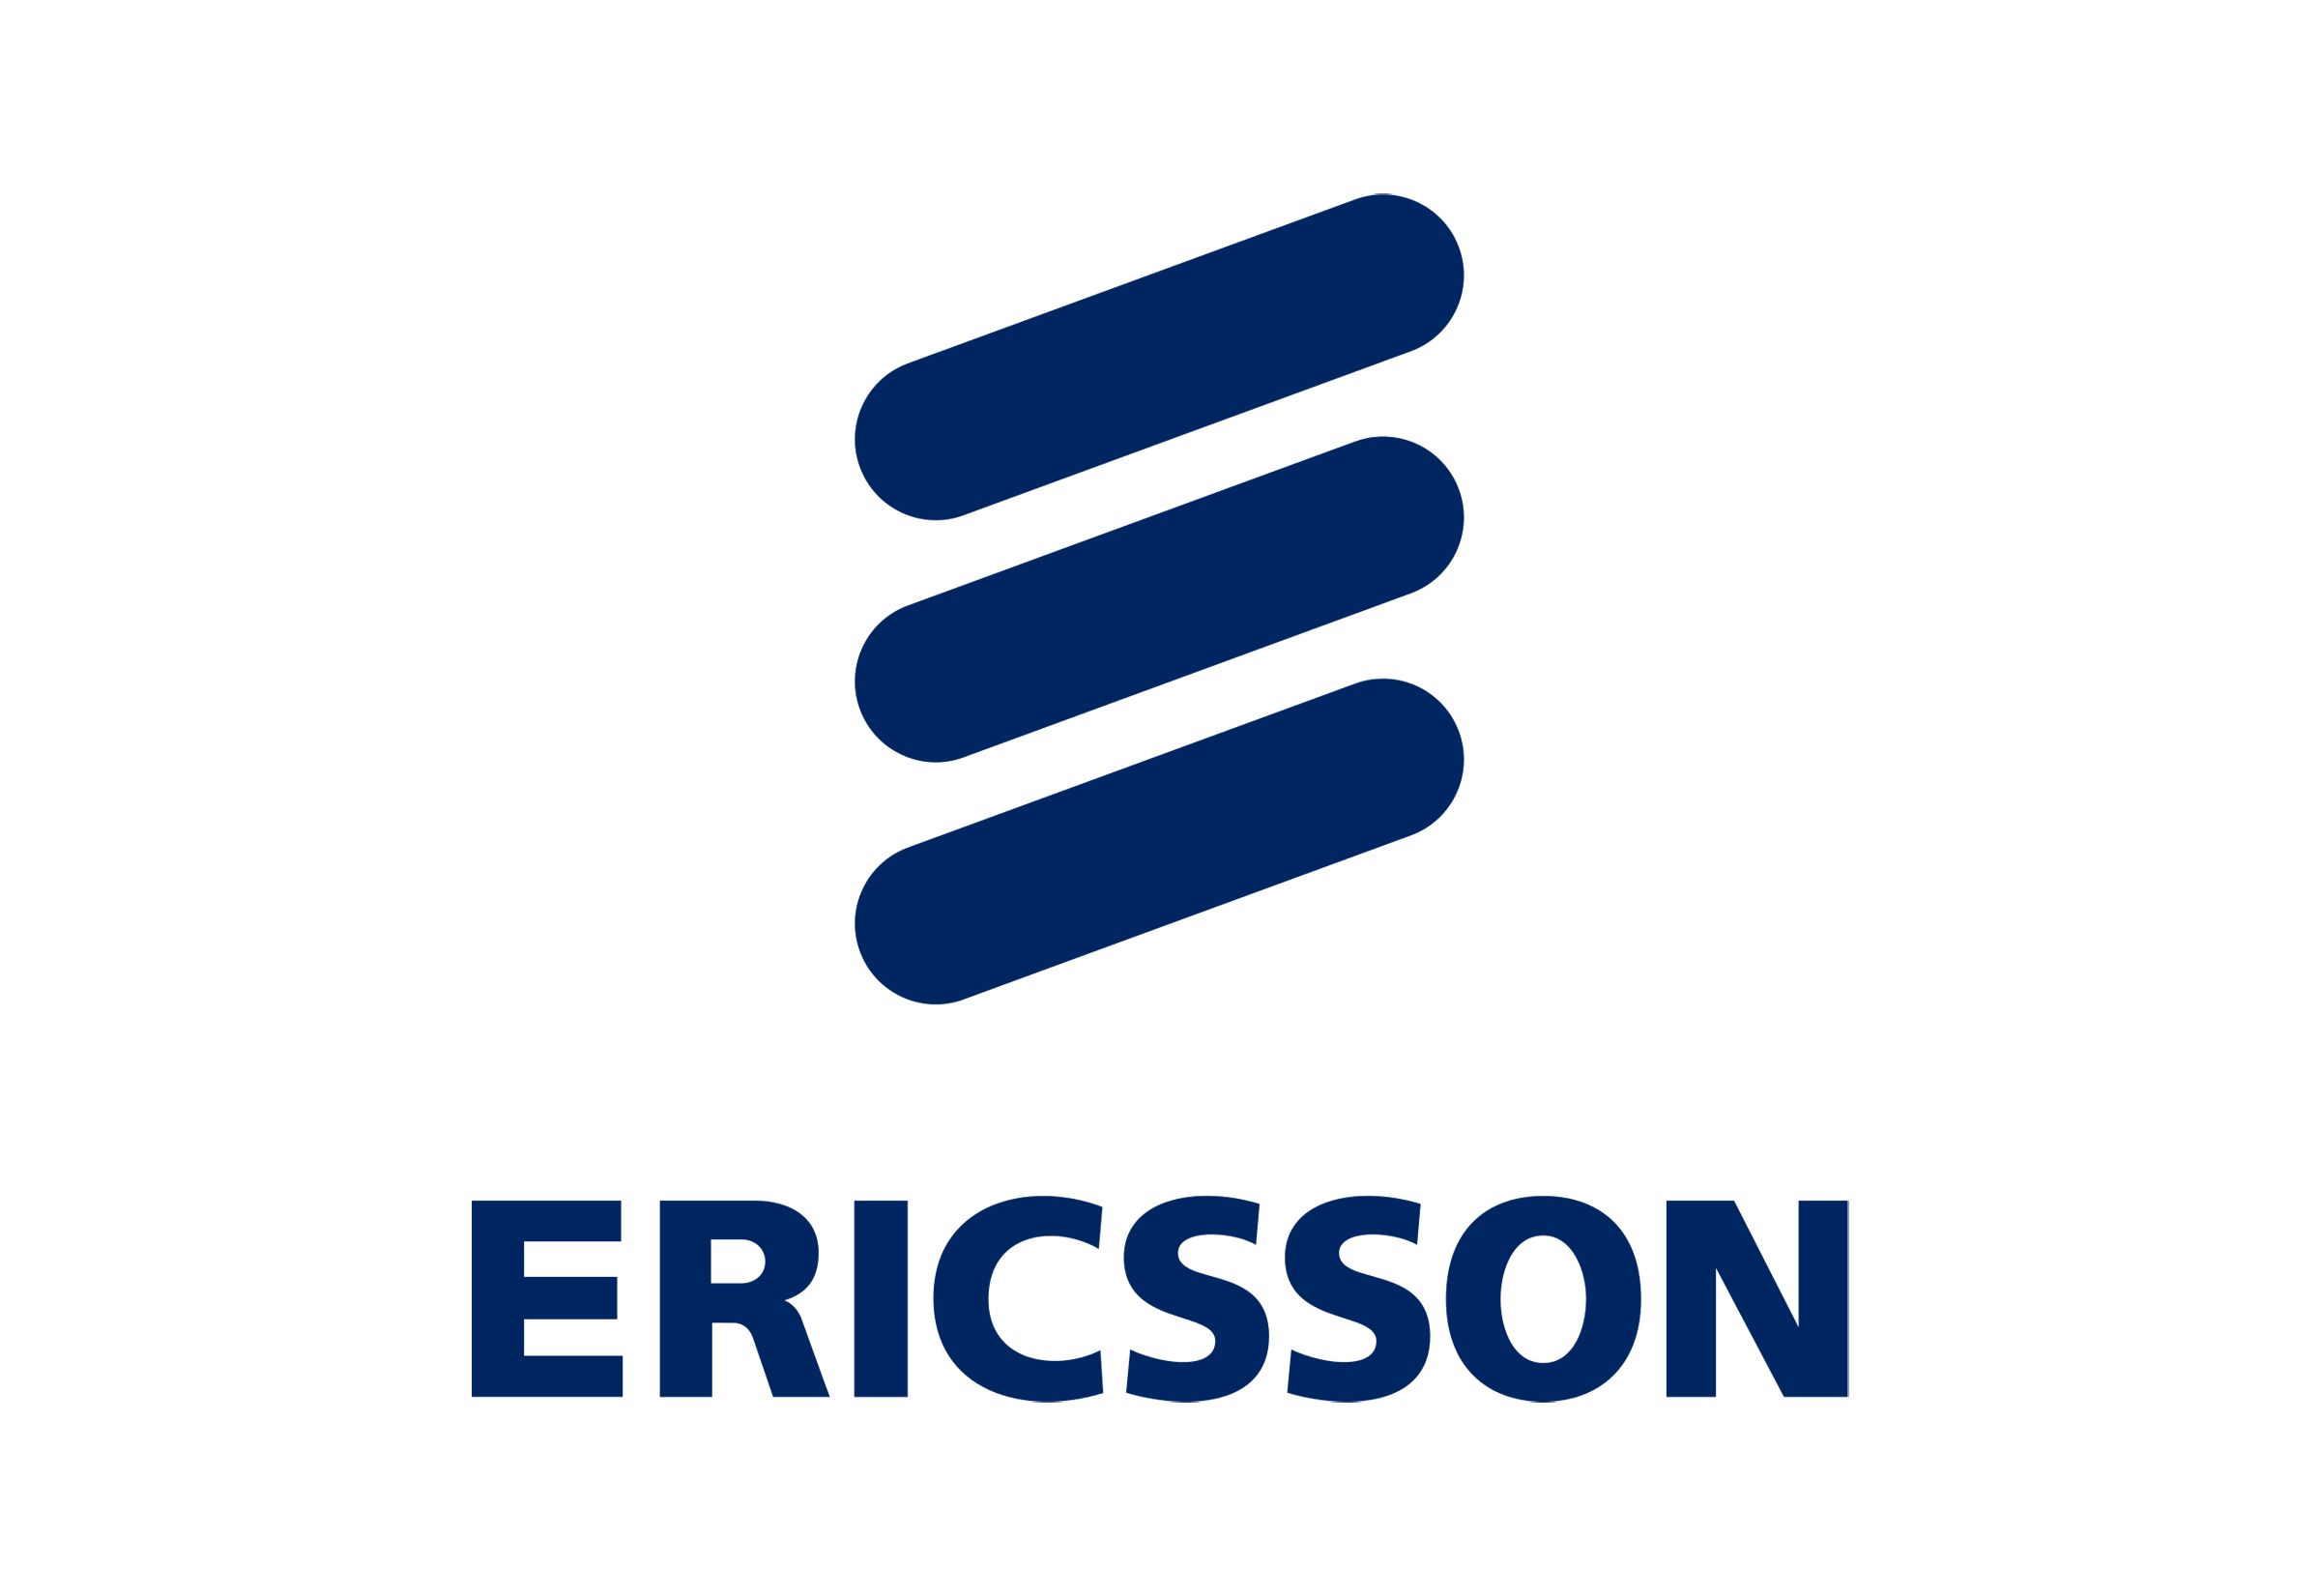 Telefonaktiebolaget LM Ericsson Logo - Ericsson logo | Dwglogo